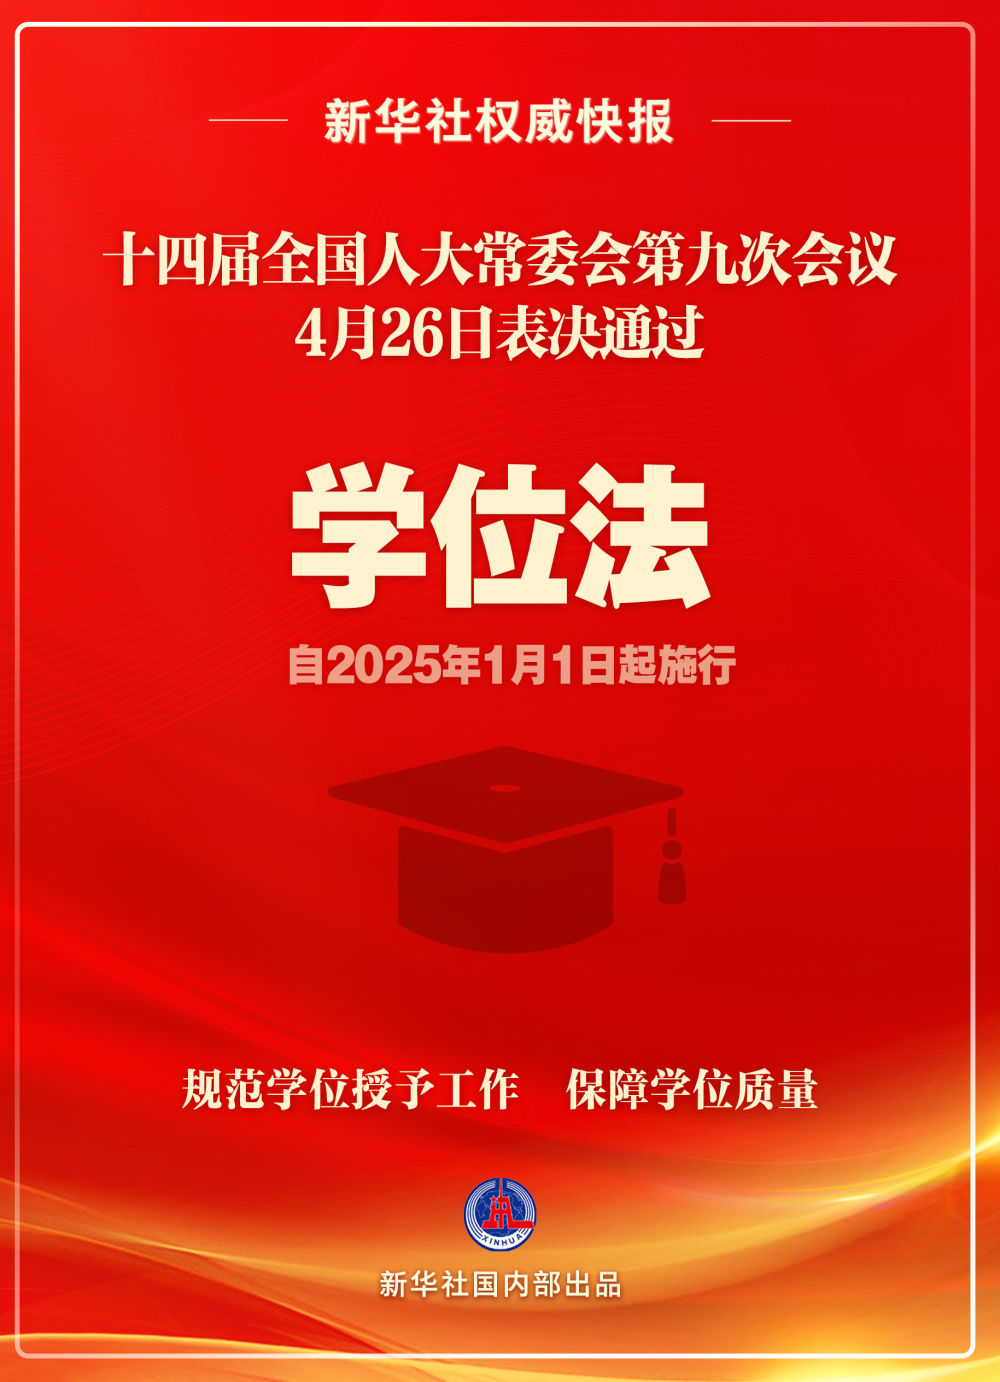 学位法通过 2025年1月1日起施行